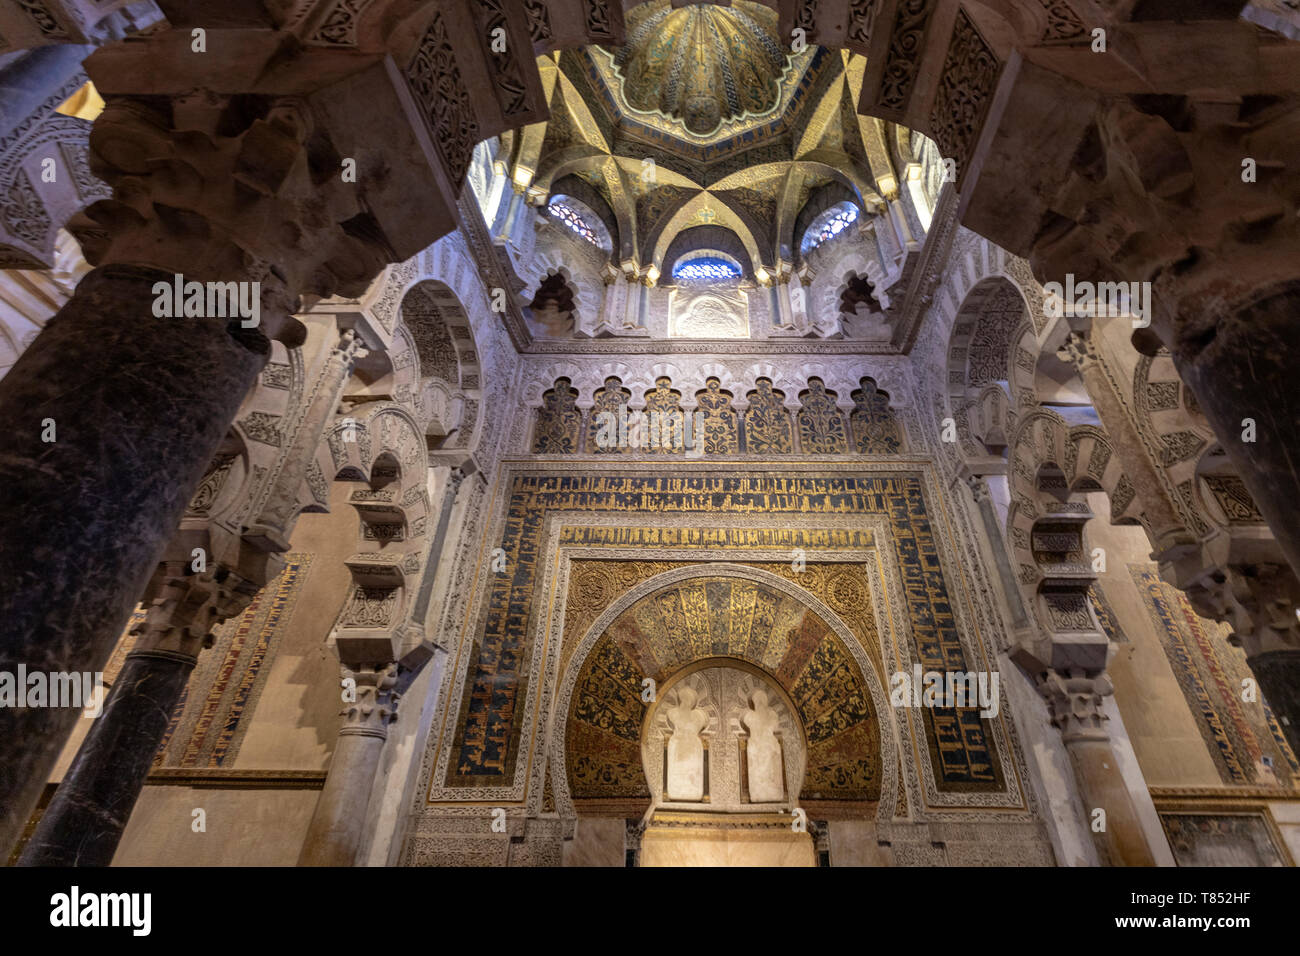 Mihrab dans la mosquée-cathédrale de Cordoue, la Mezquita de Cordoue, Andalousie, Espagne Banque D'Images